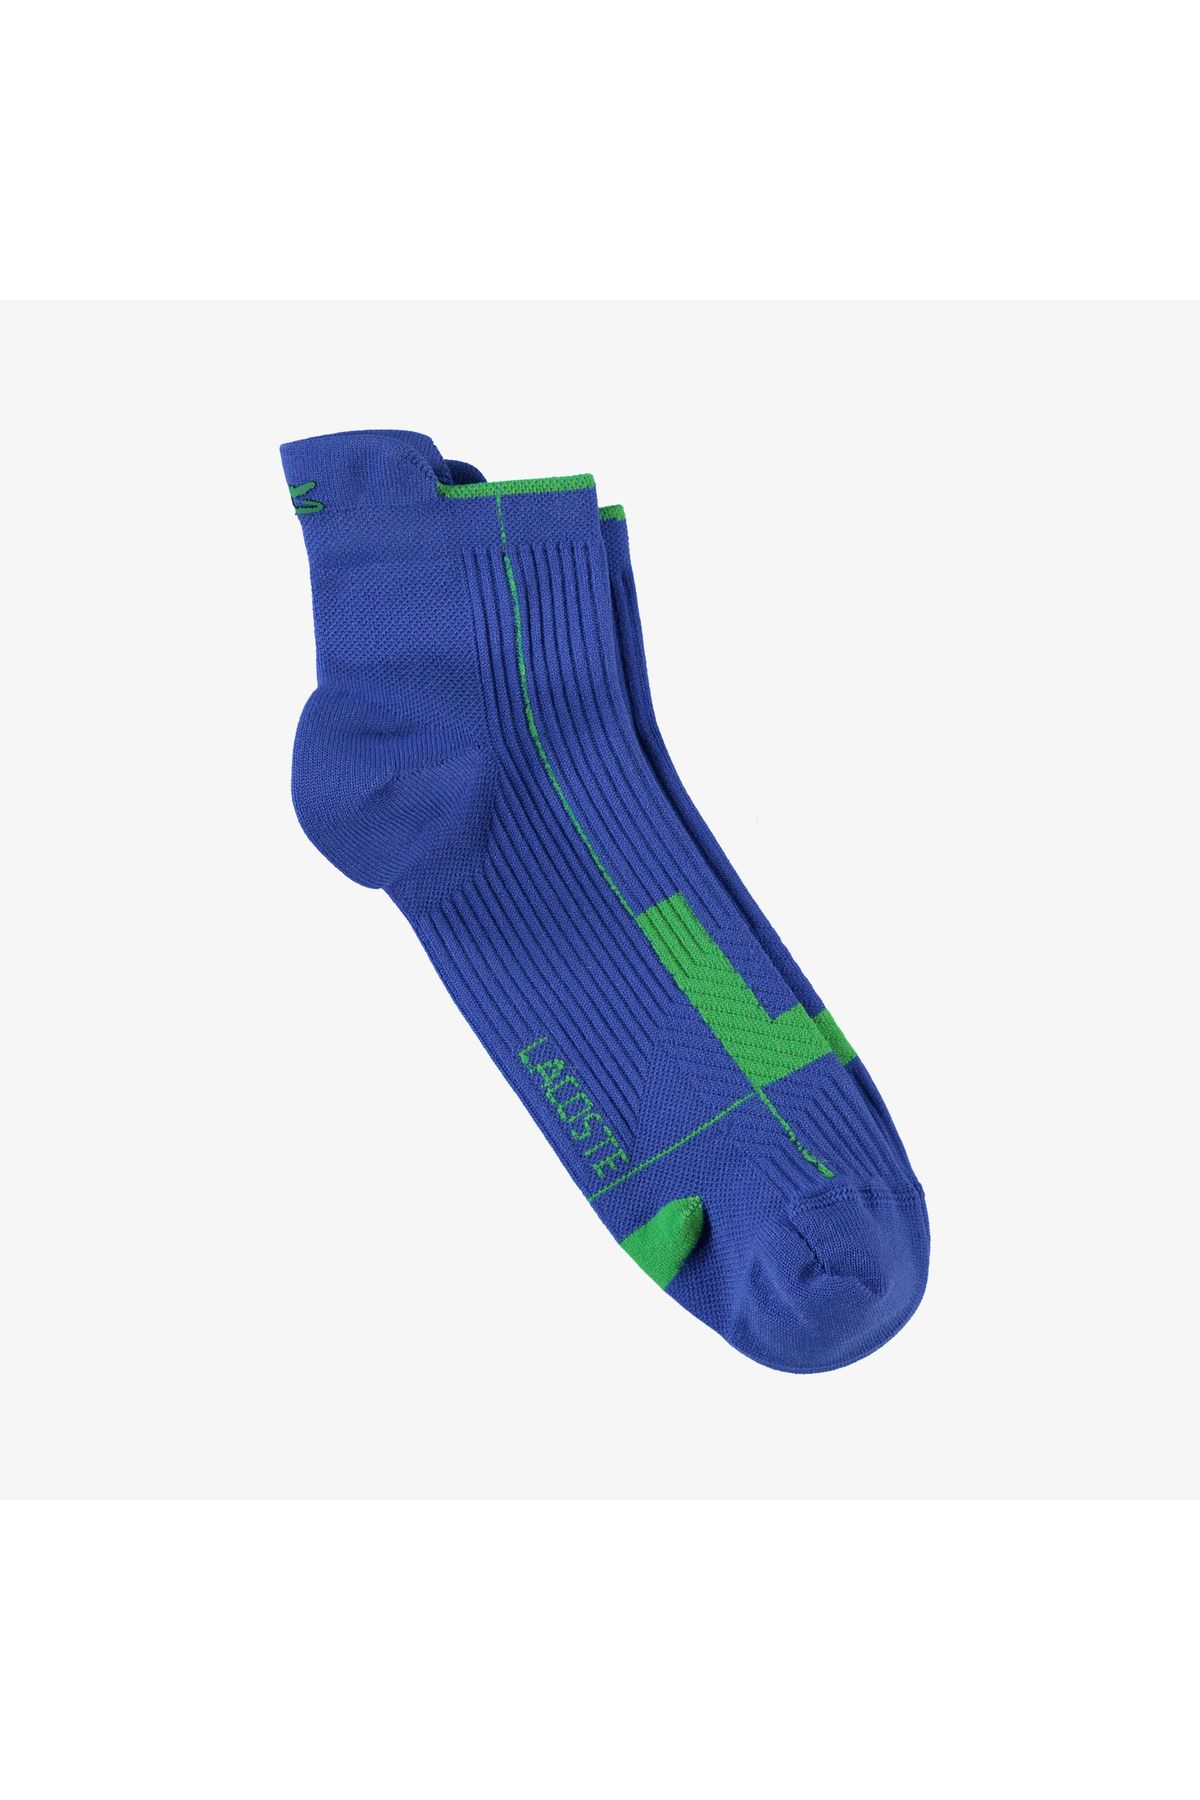 Lacoste Unisex Renk Bloklu Mavi Çorap